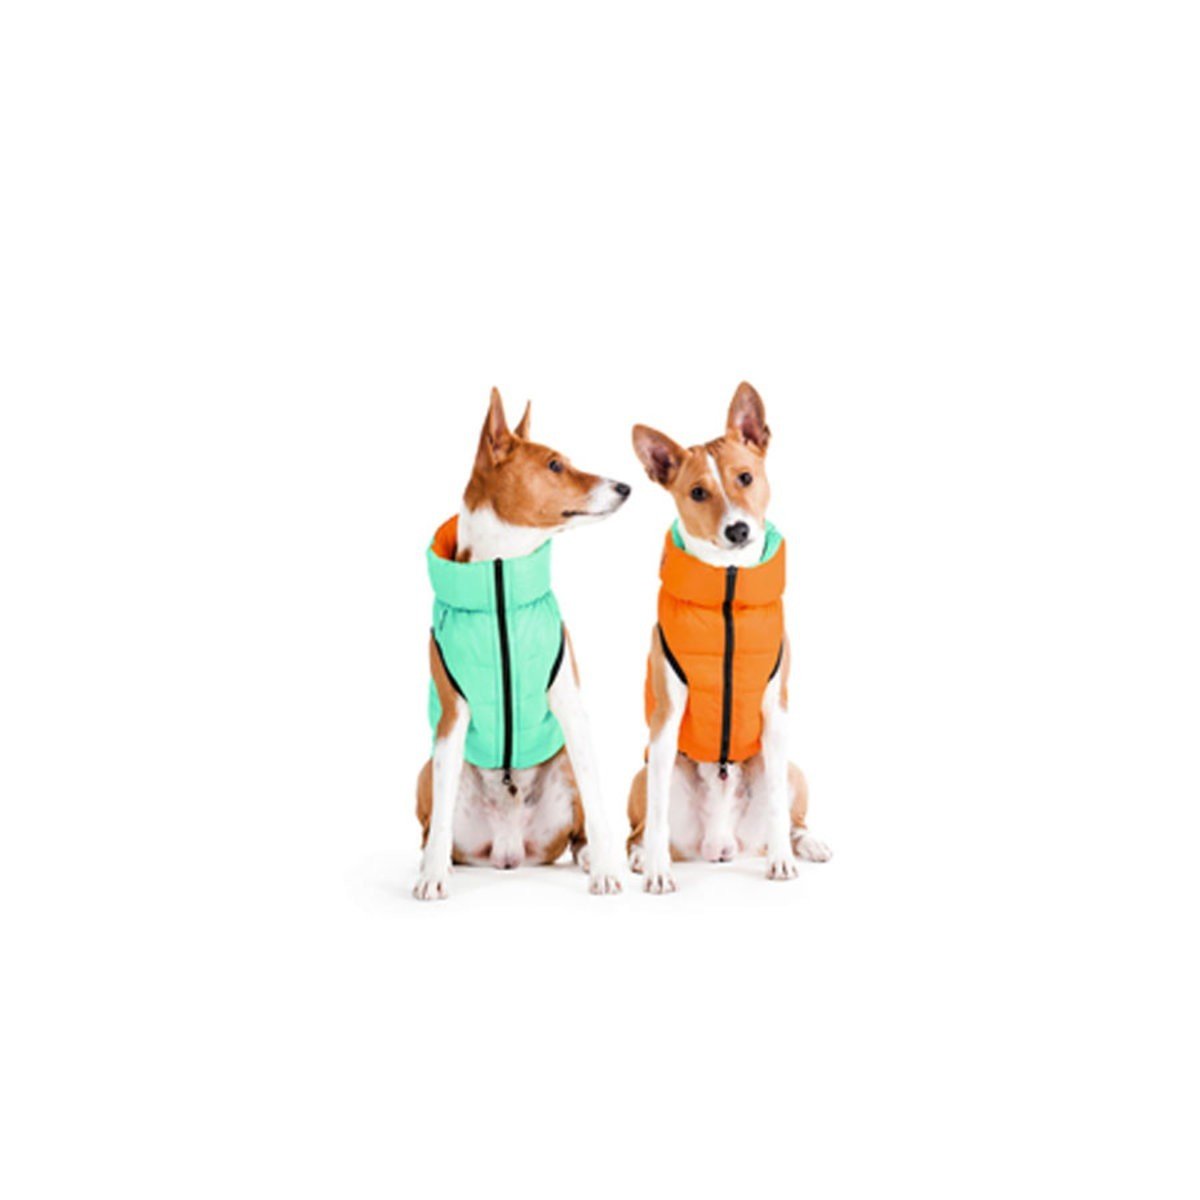 Курточка для собак AiryVest Lumi двухсторонняя, светящаяся в темноте, S30, салатово-оранжевая - фото 2